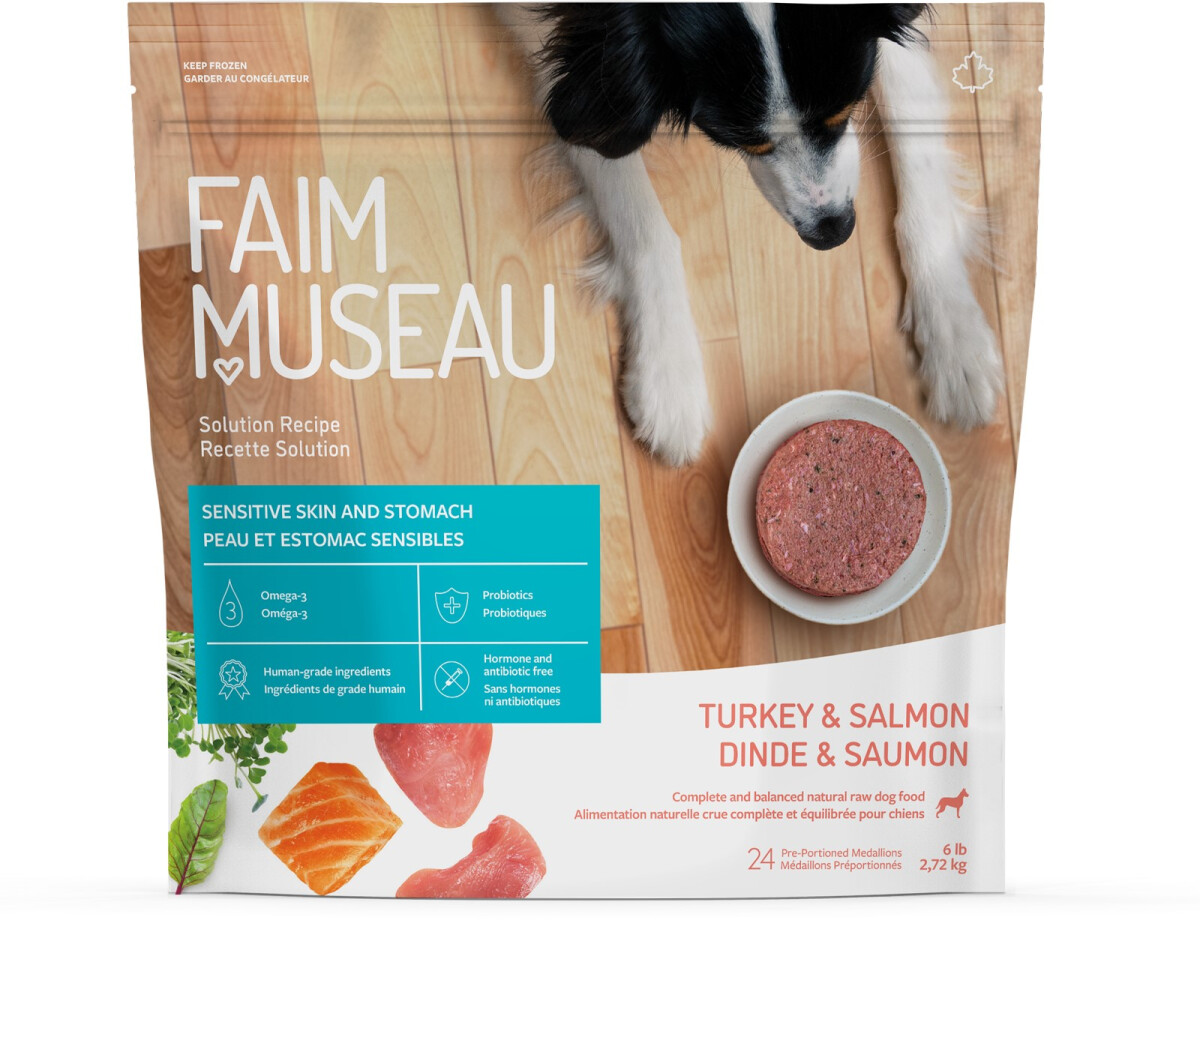 Fm273 - Nourriture crue recette solution dinde & saumon pour chiens - Faim Museau